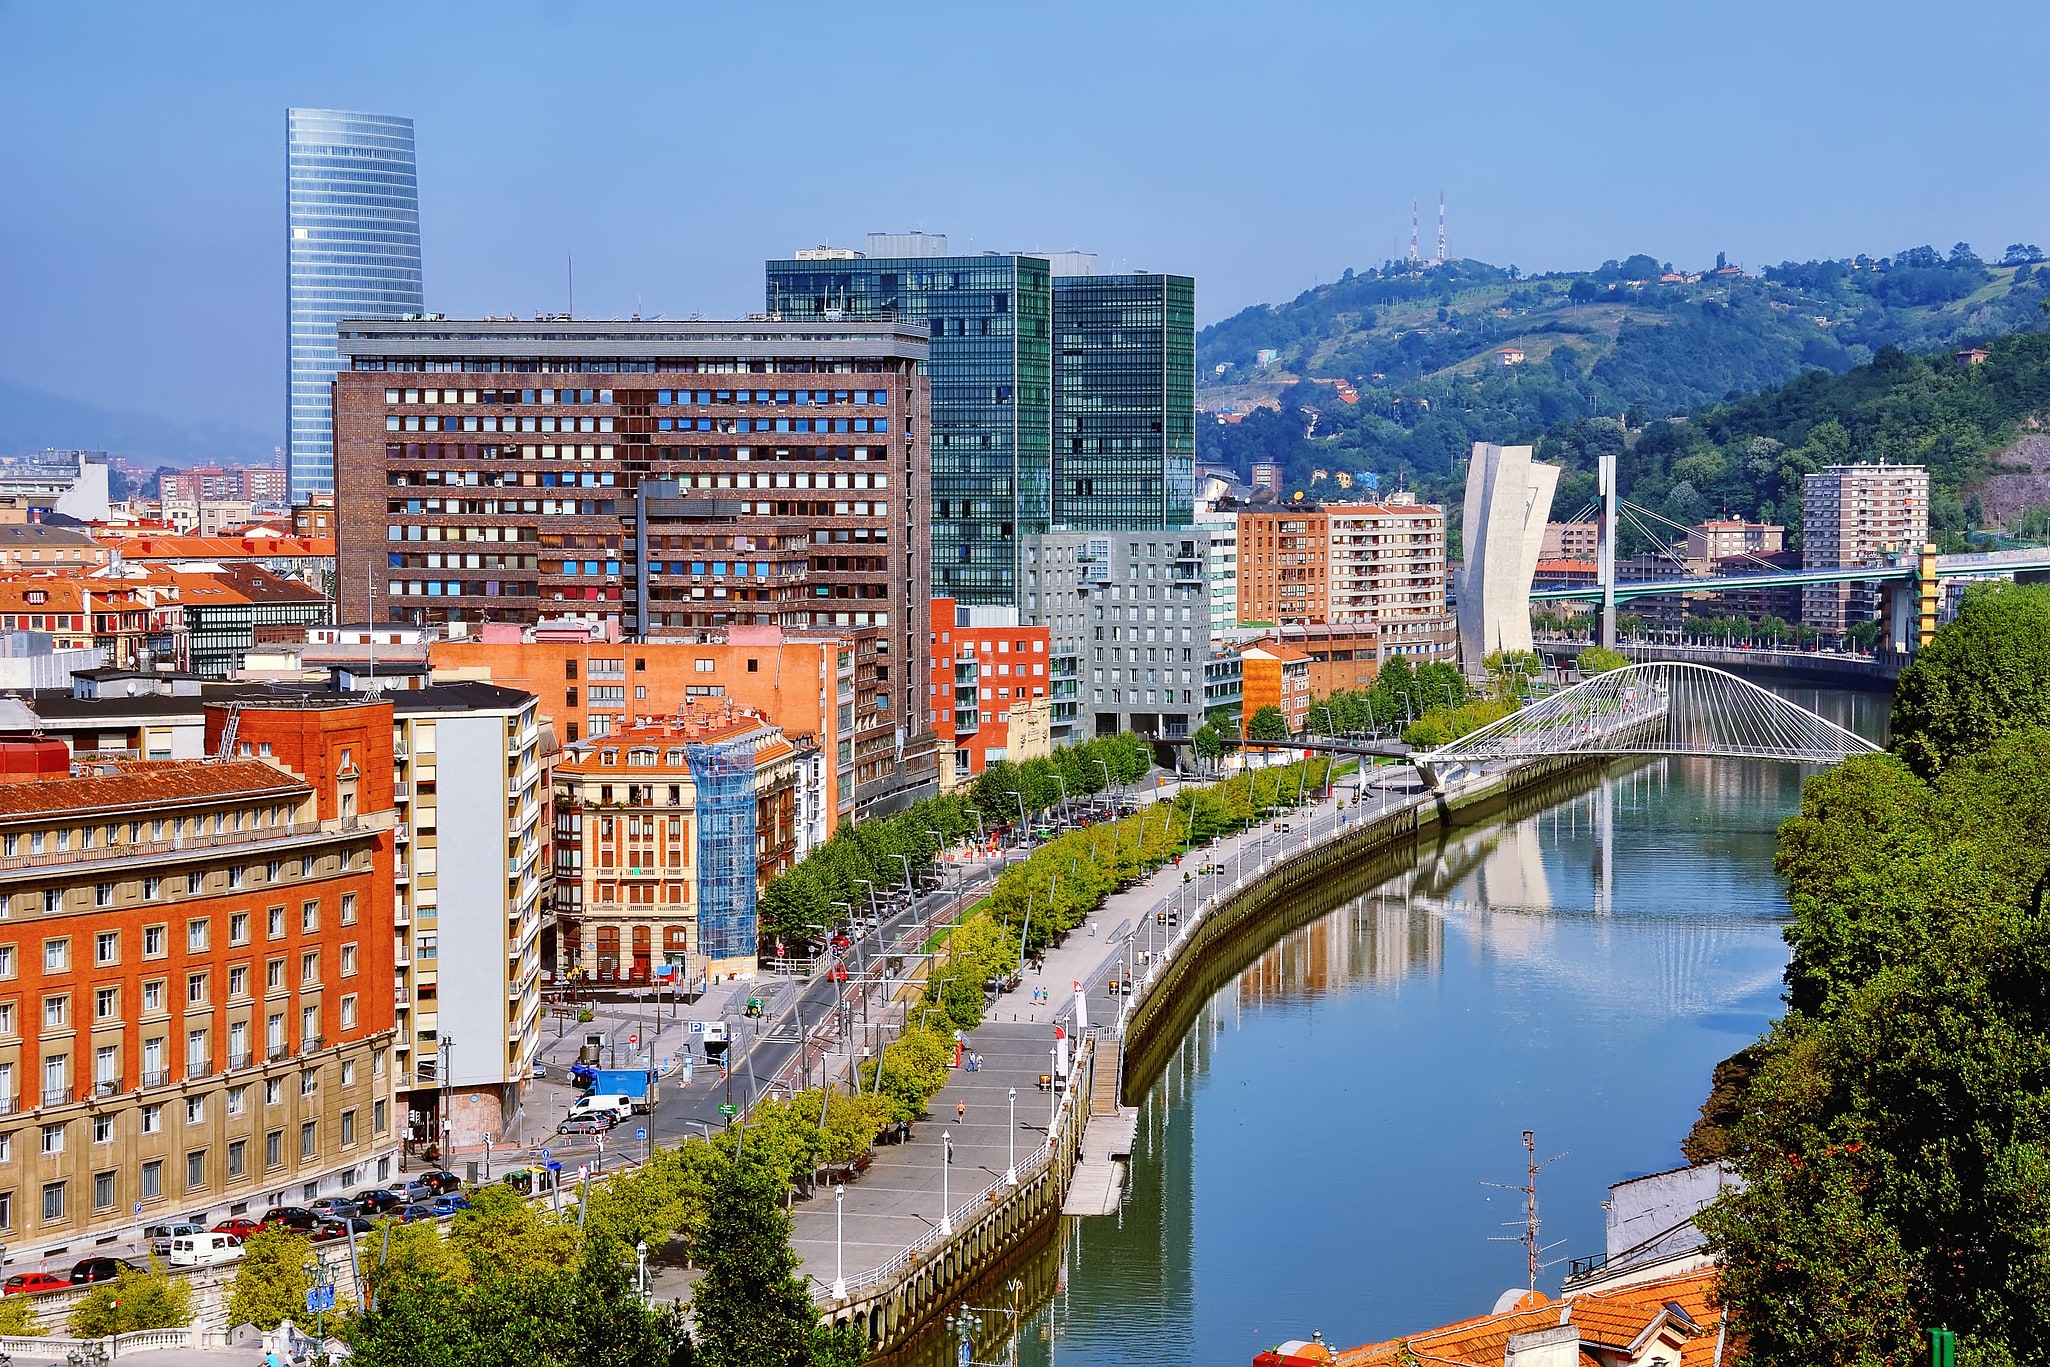 Bilbao, Espagne